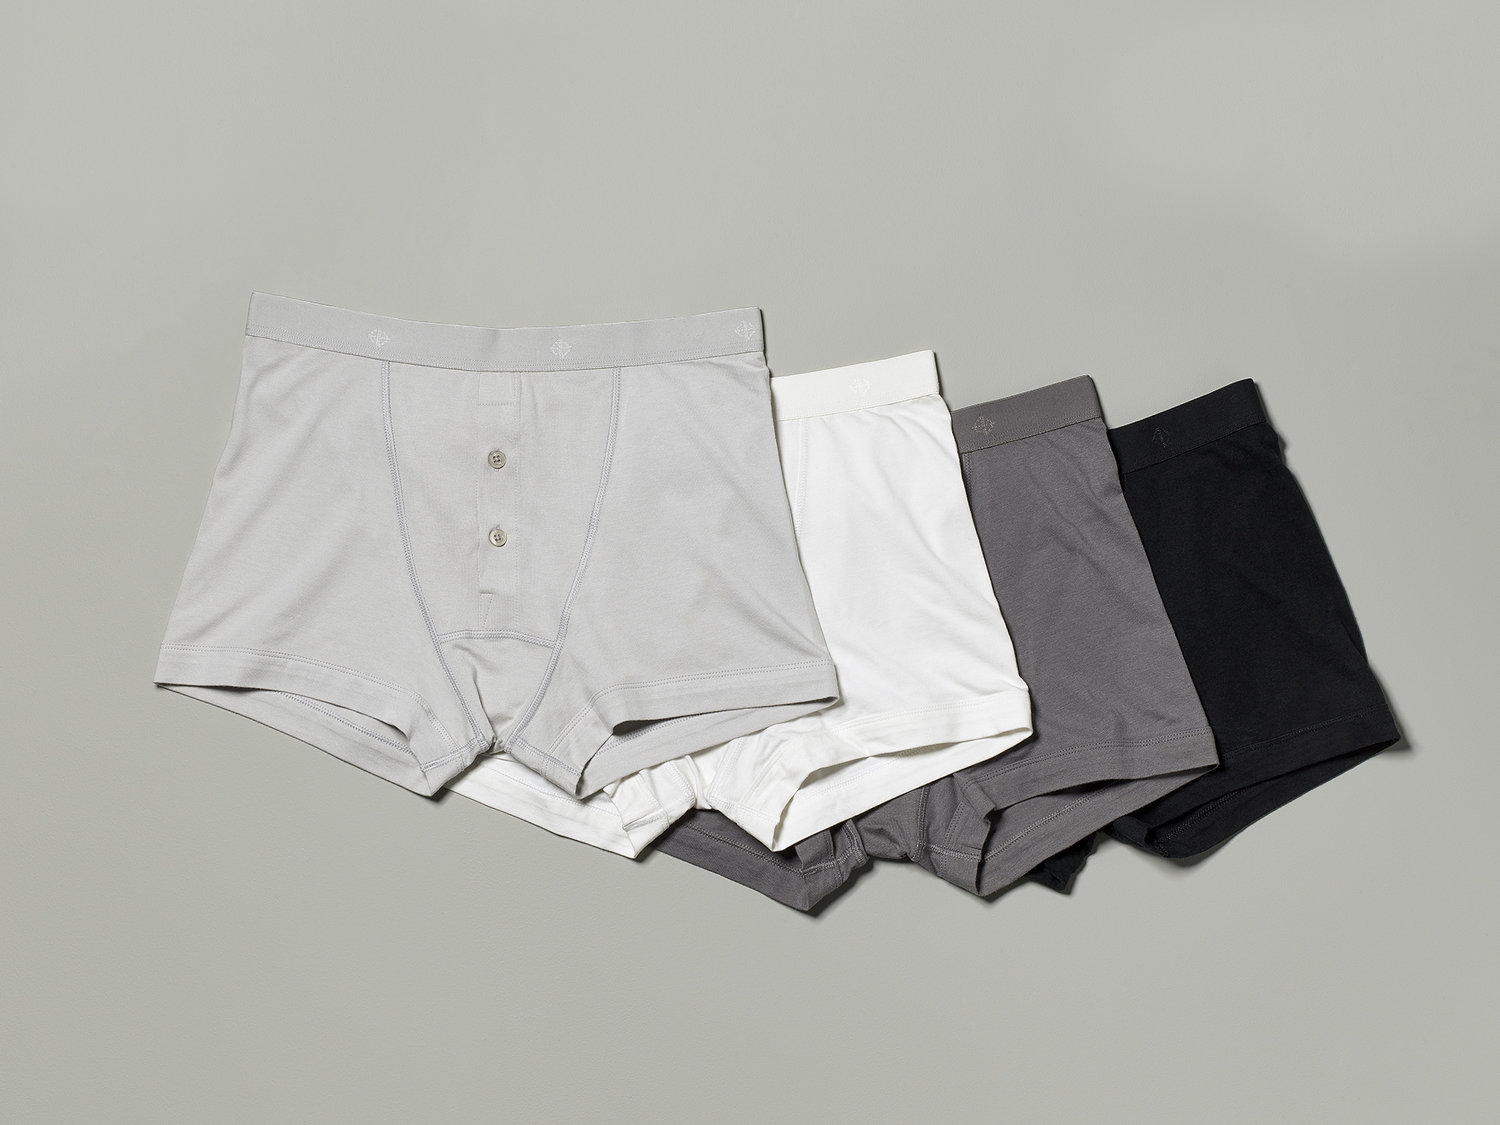 Luxury Underwear Made From Forest Waste? | Men and underwear